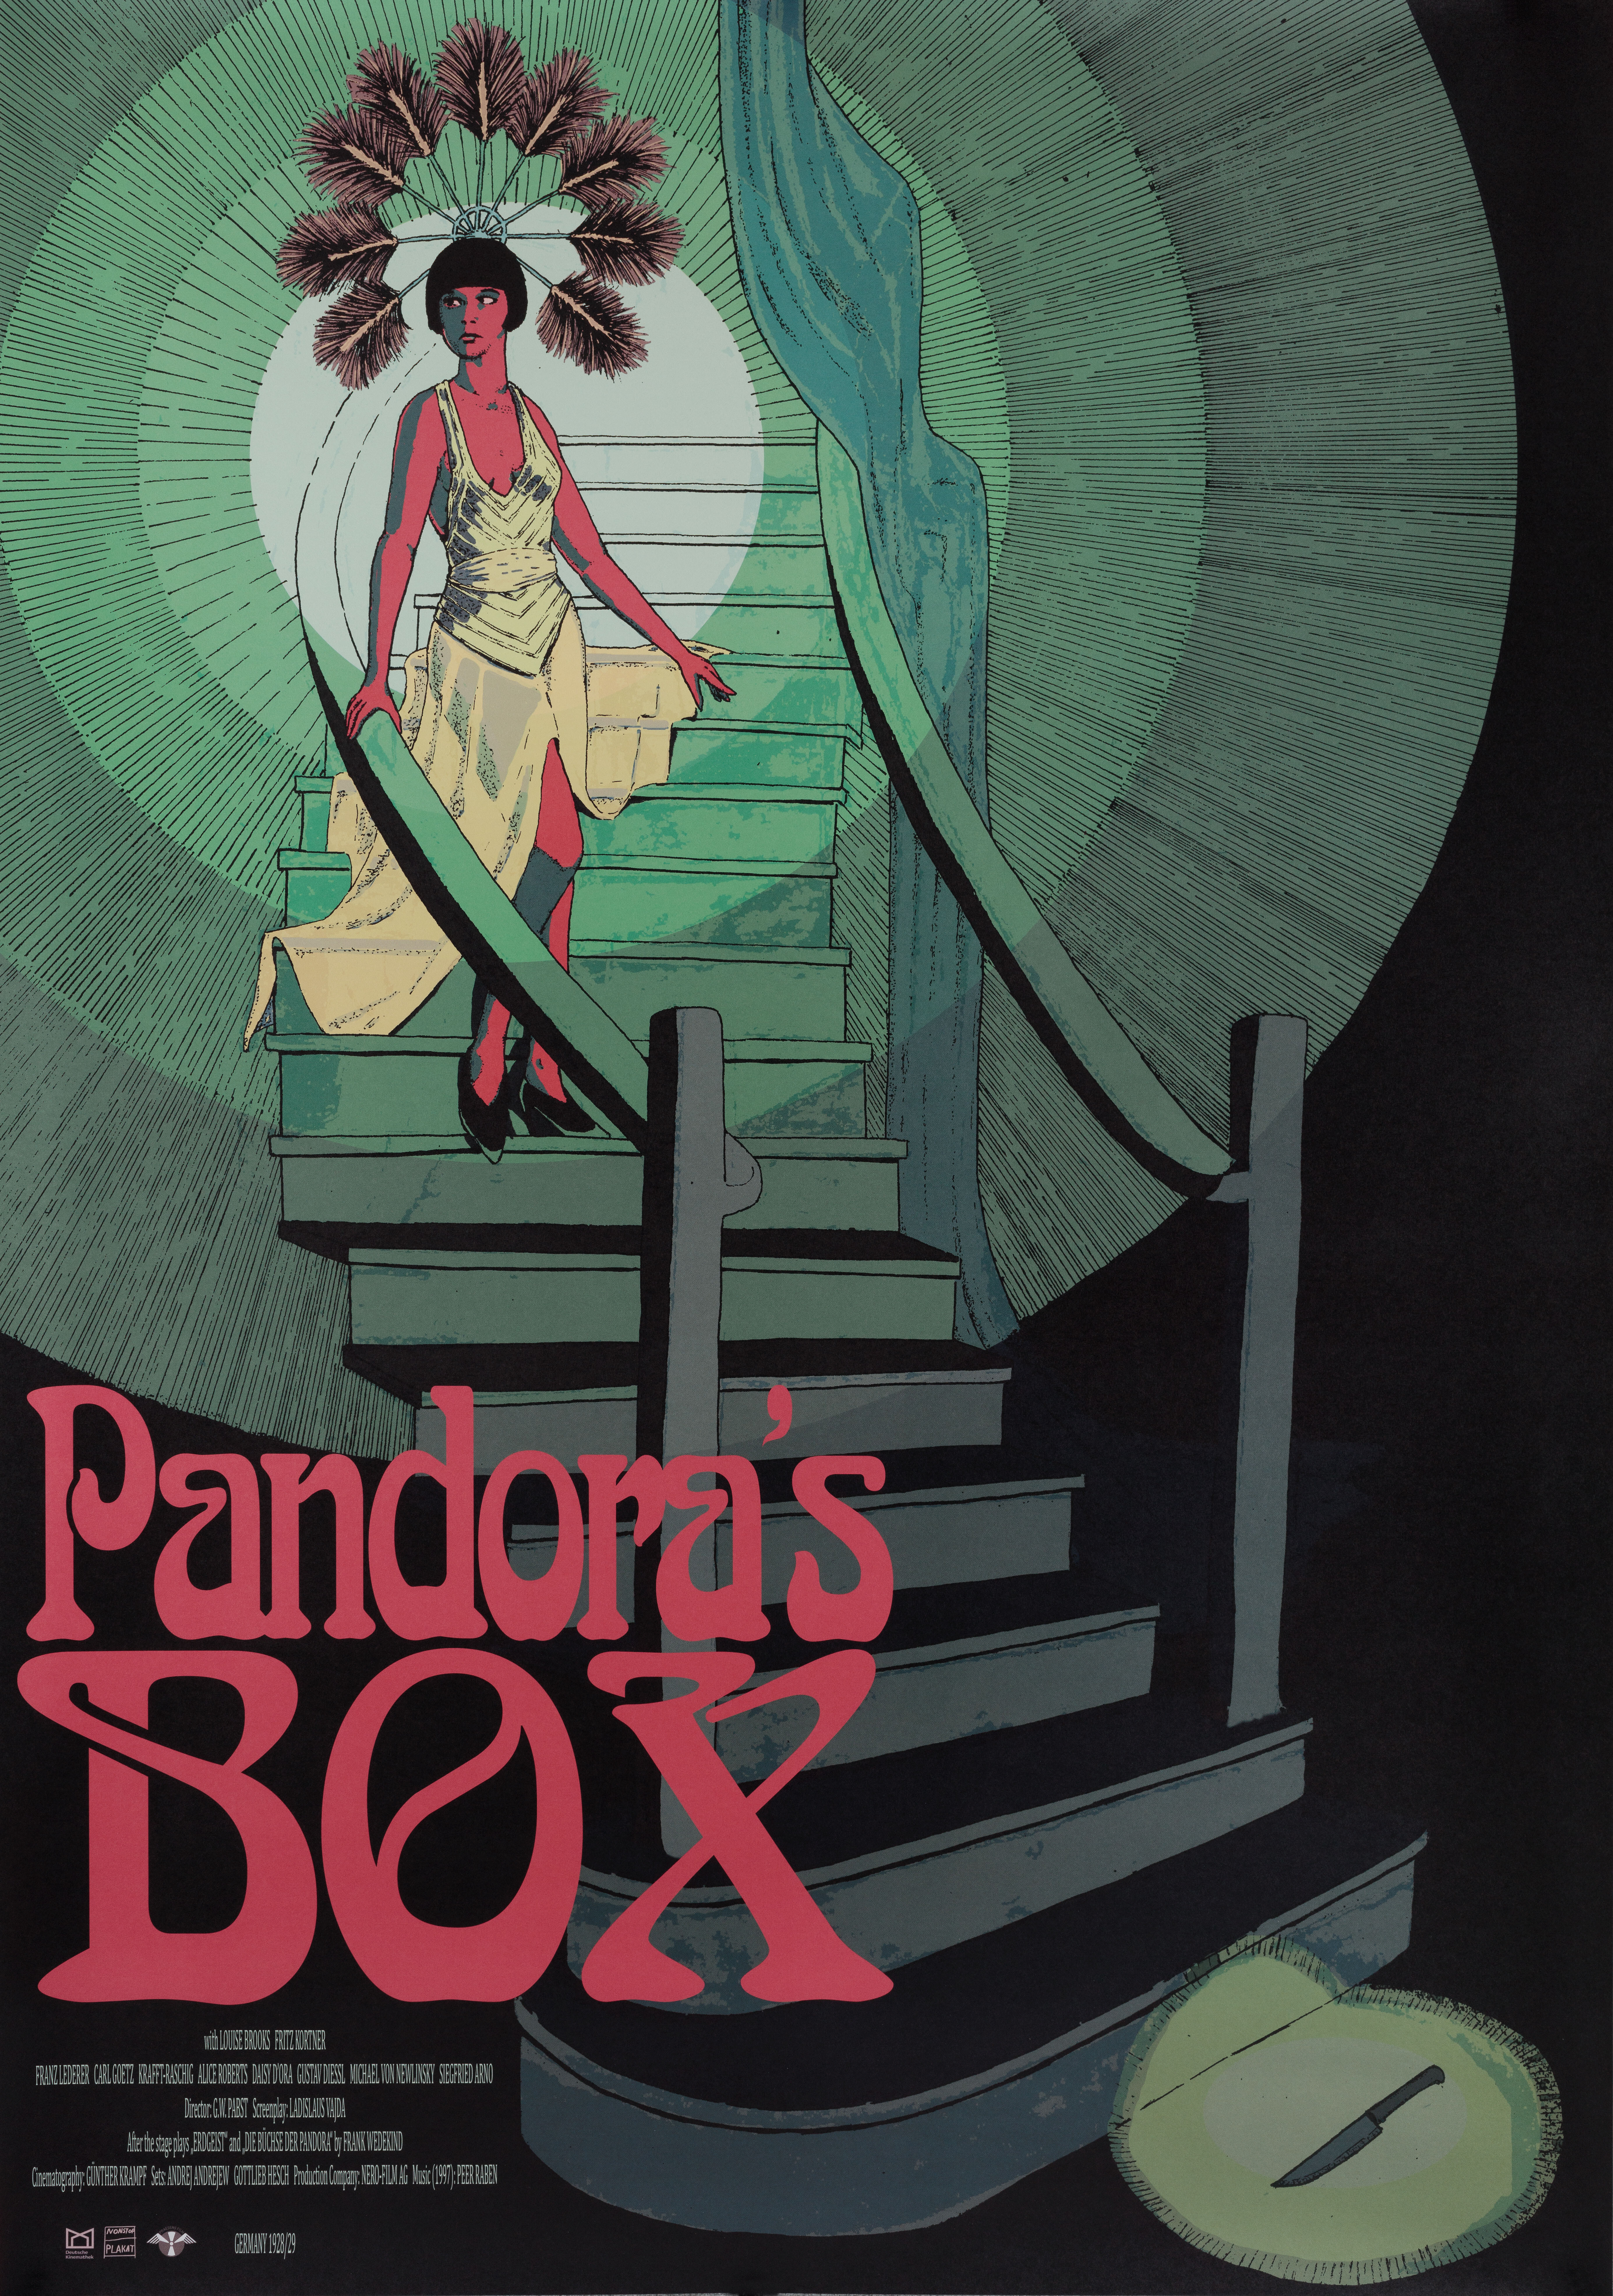 Ящик Пандоры (Pandoras Box, 1929), режиссёр Георг Вильгельм Пабст, постер к фильму в стиле ар-деко (Швеция, 2021 год), автор Люк Грейпенгиссер